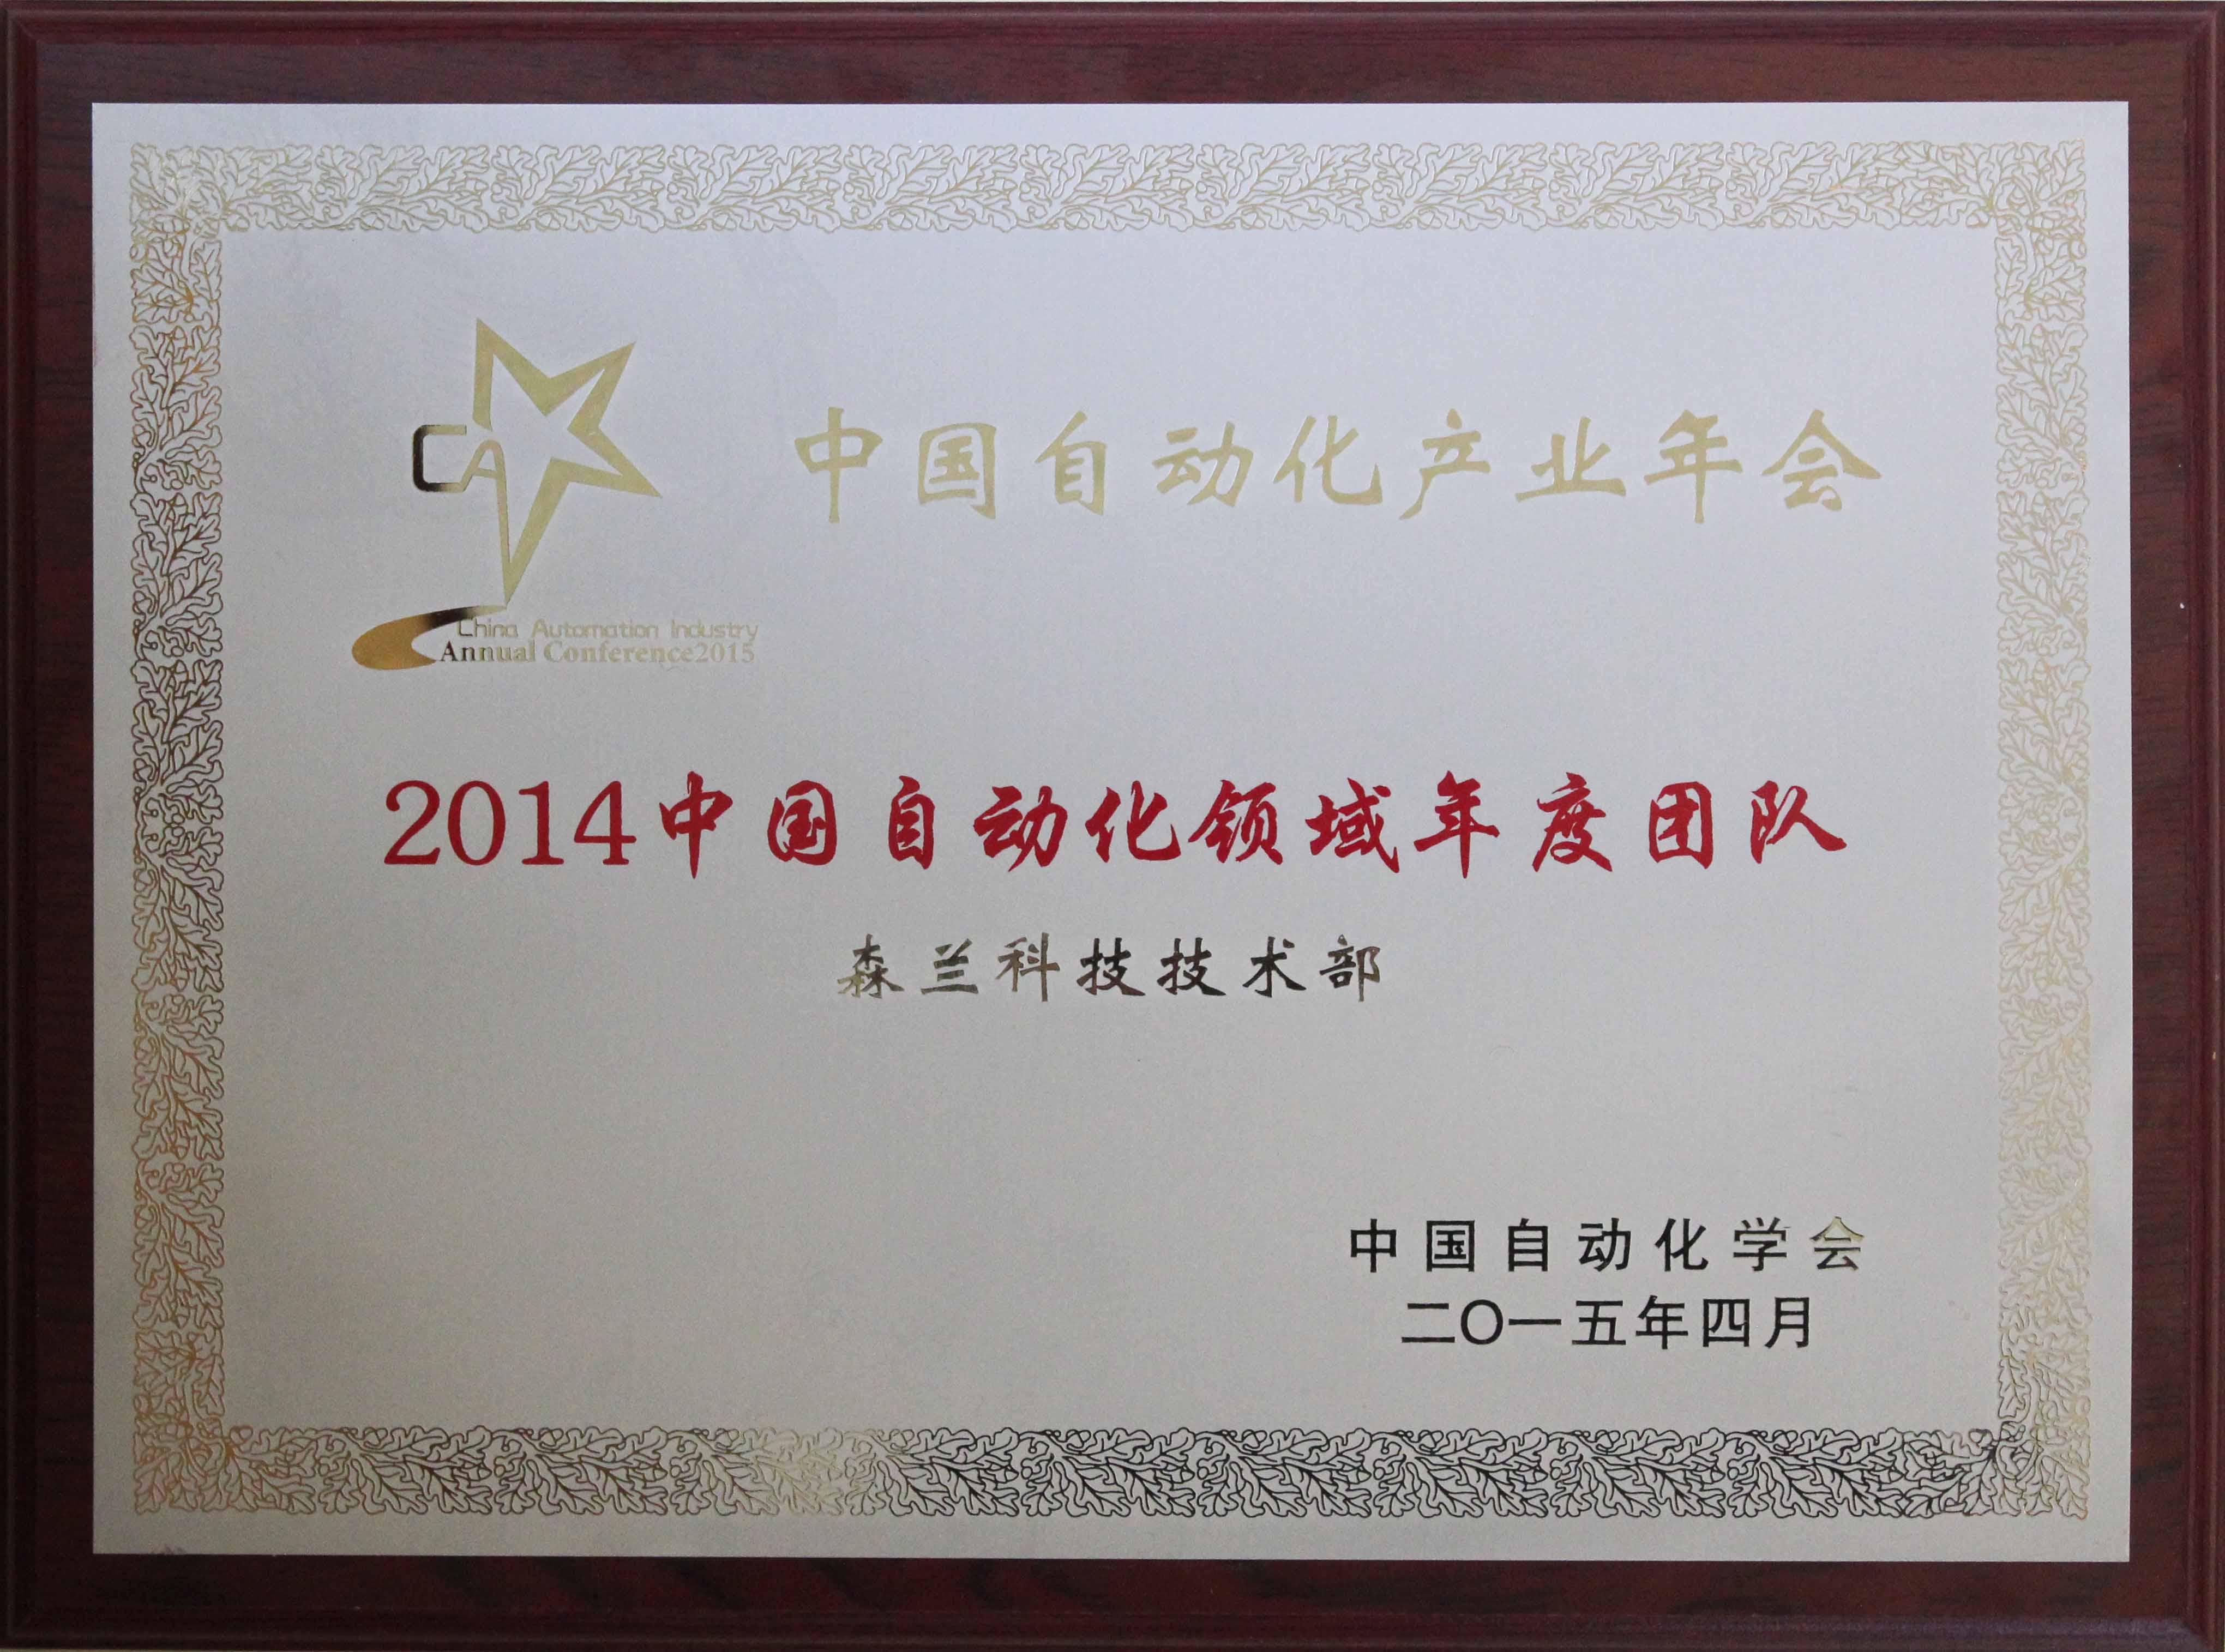 中国自动化网,2015年中国自动化产业年会，希望森兰荣获三项大奖